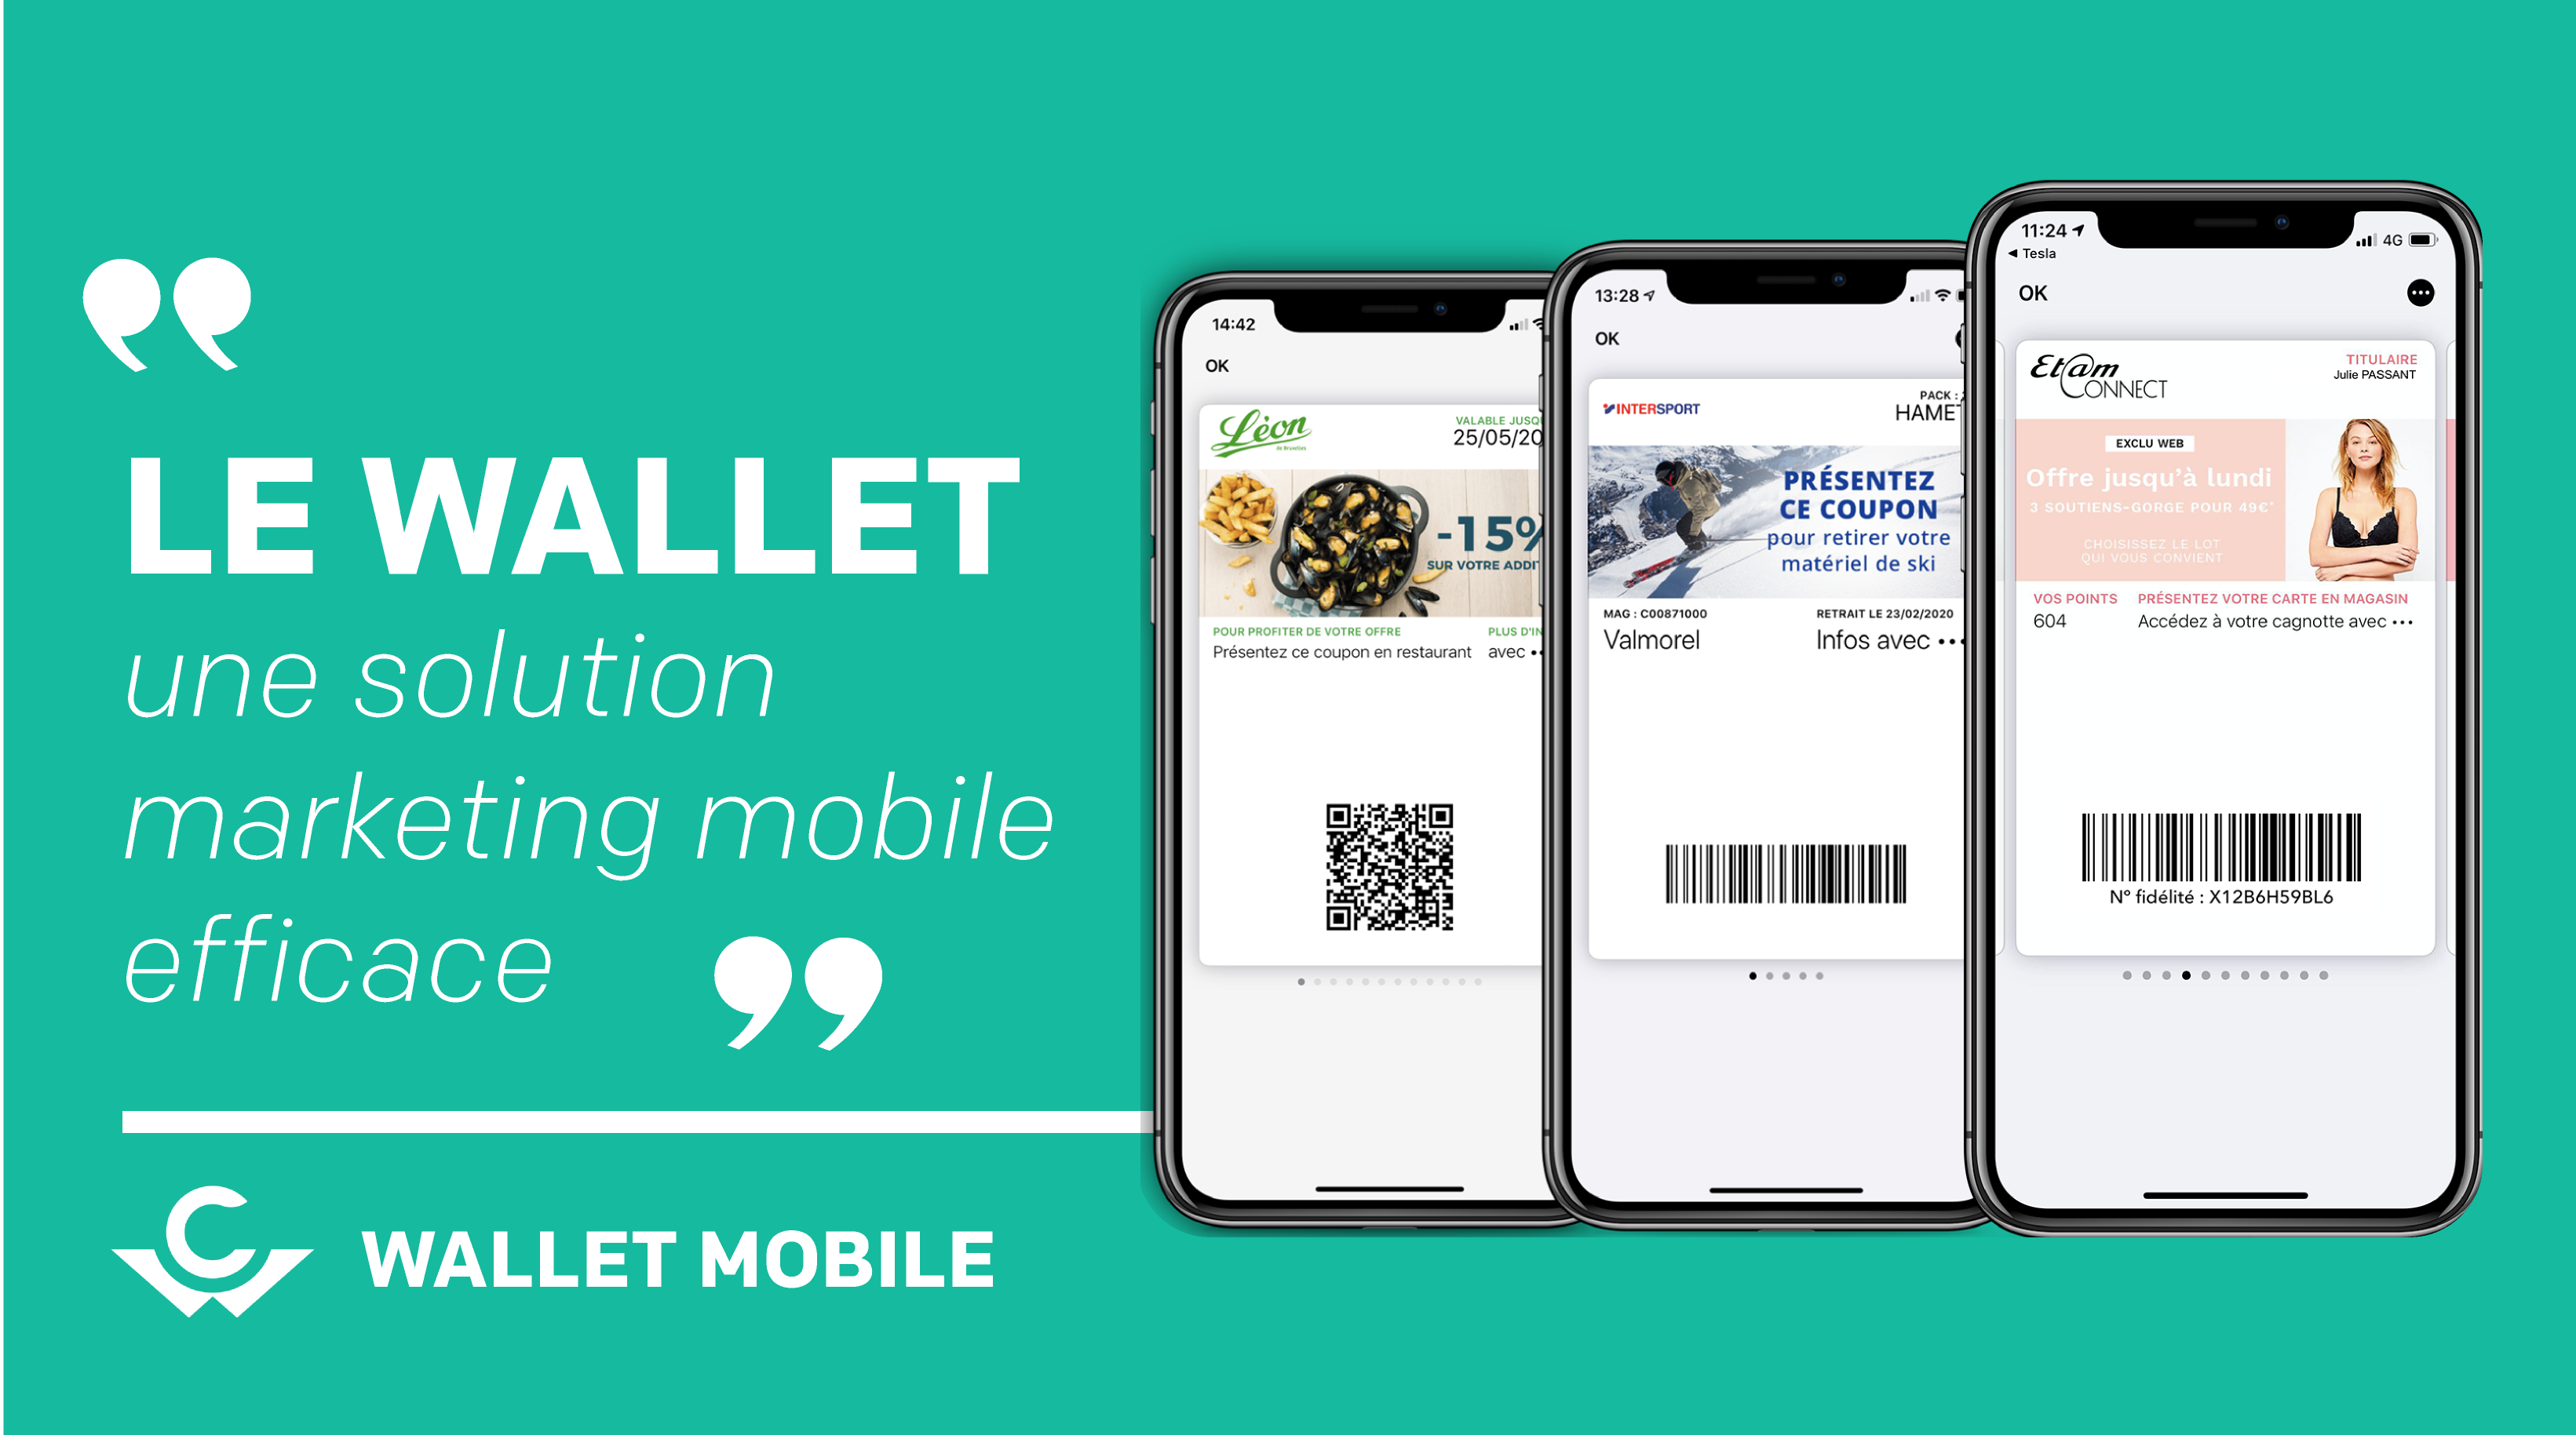 Le wallet, une solution marketing mobile efficace